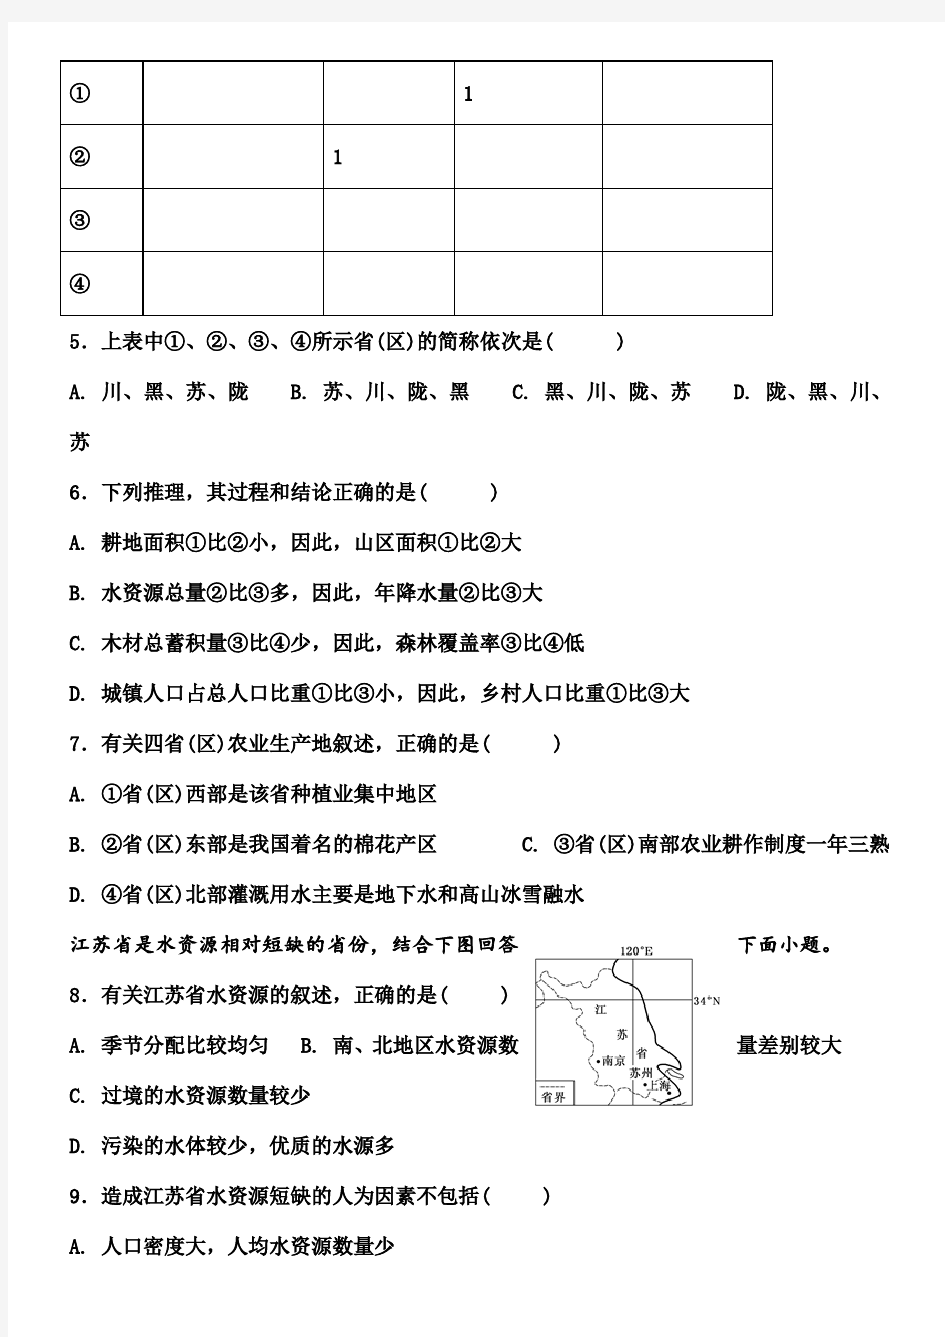 高二区域地理中国地理的自然资源测试题 (1)